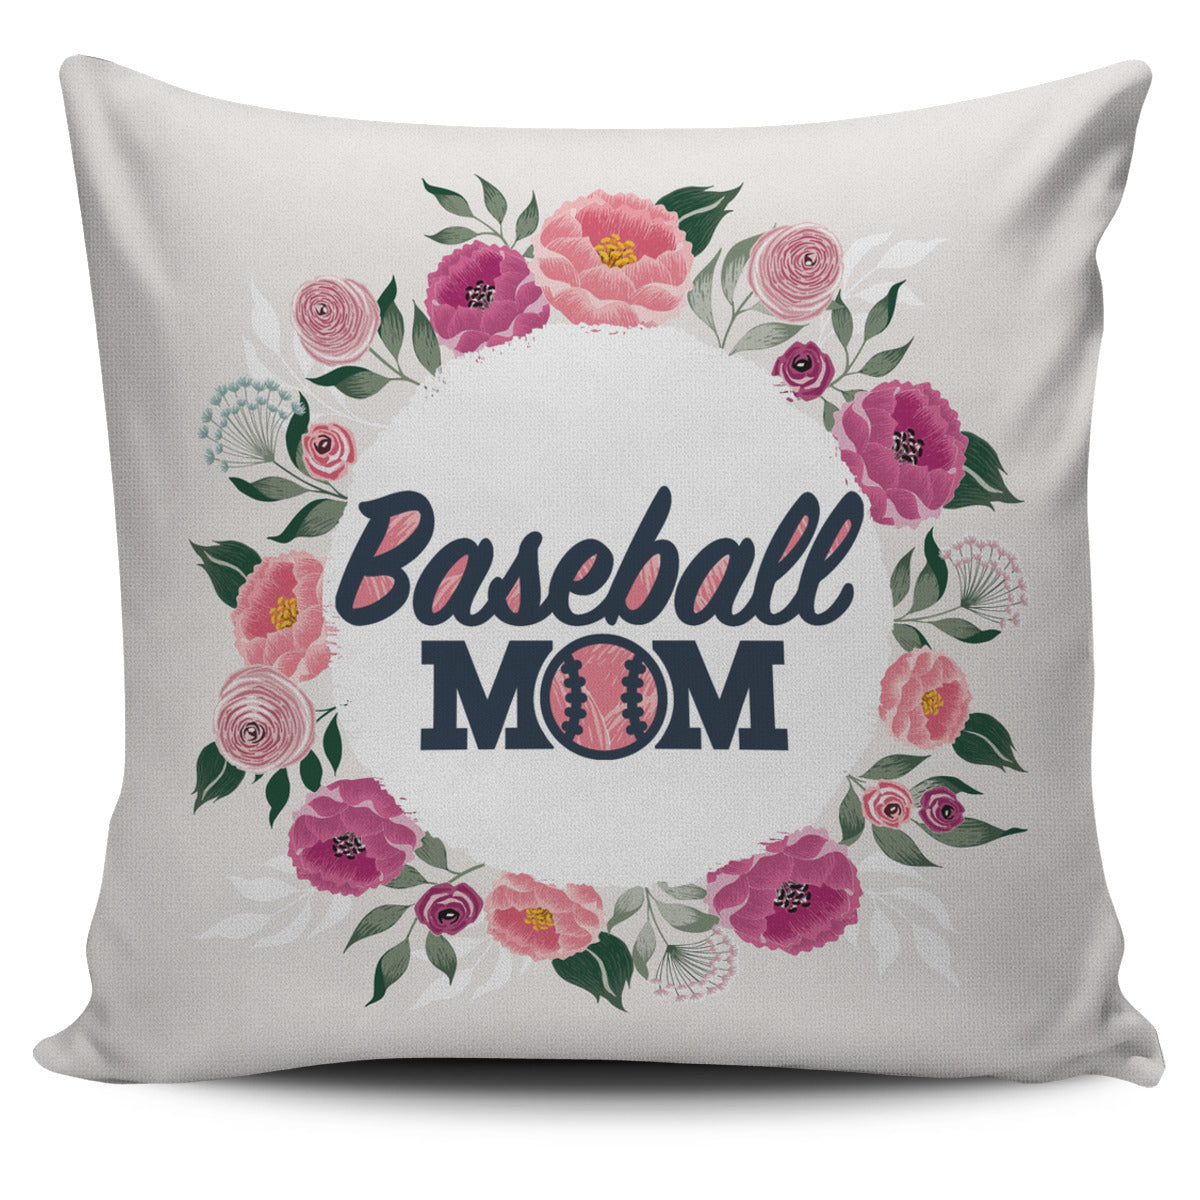 Baseball Mom Pillow Cover